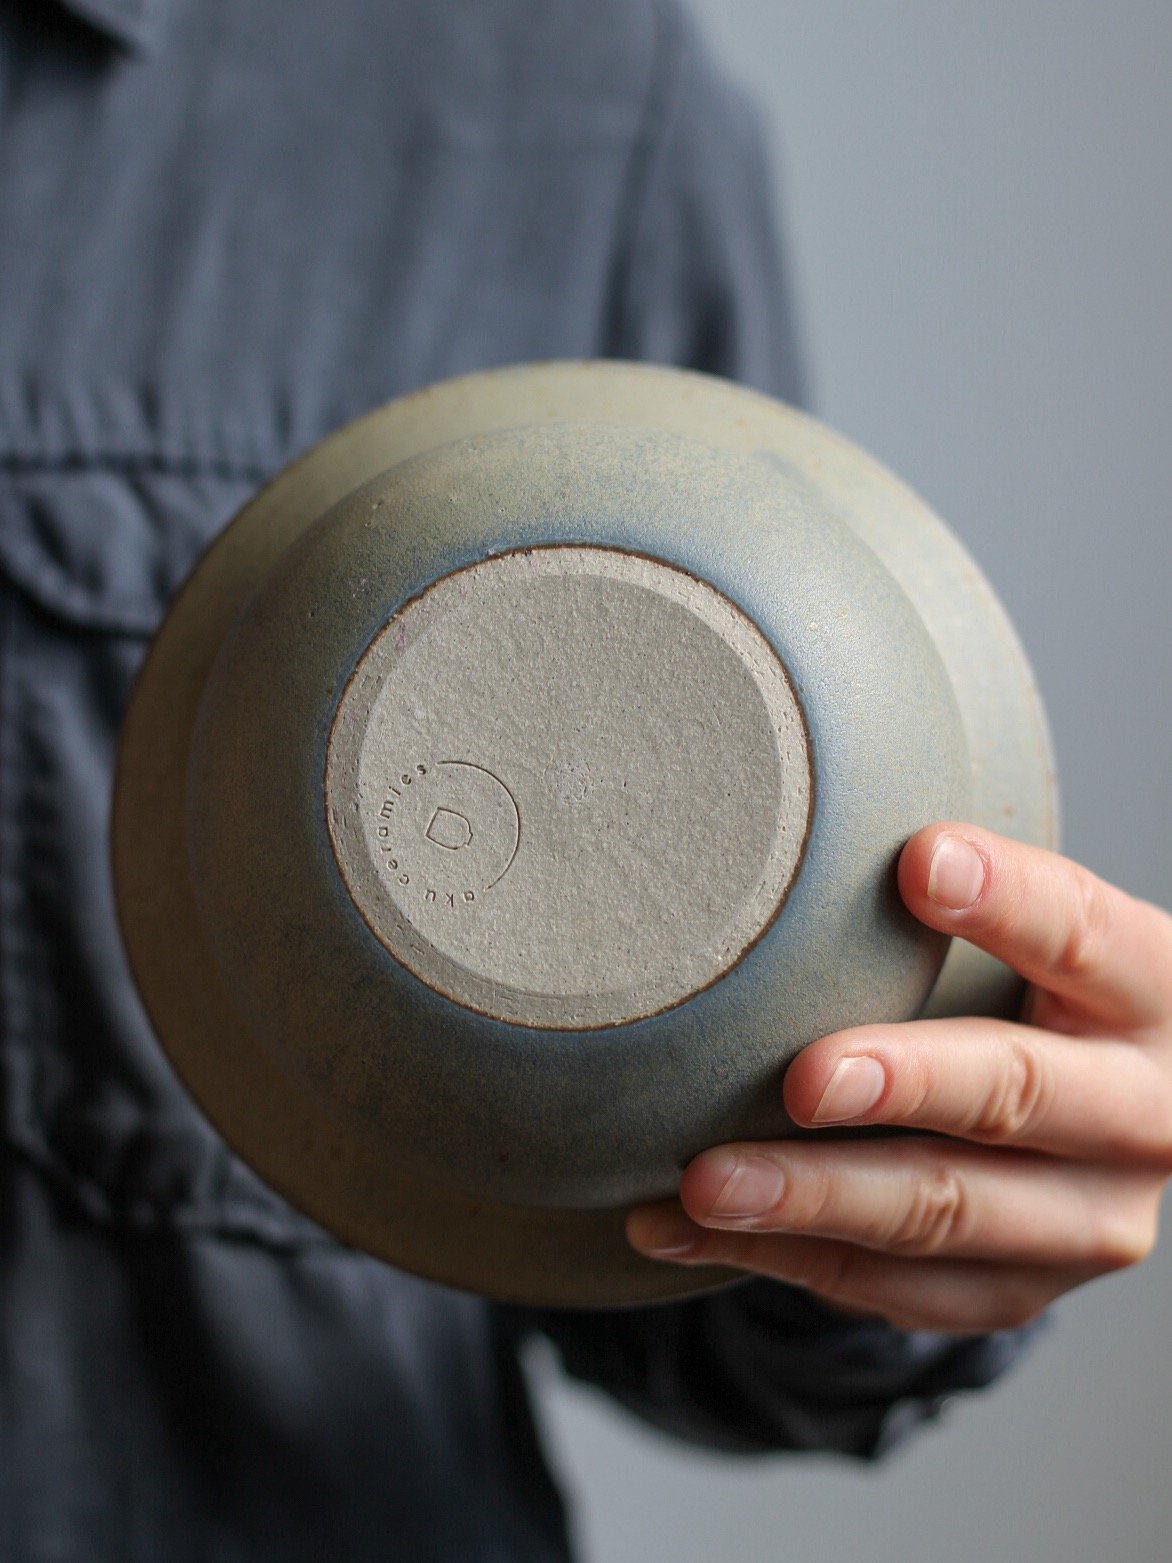 Image of mushroom shaped bowl in loch